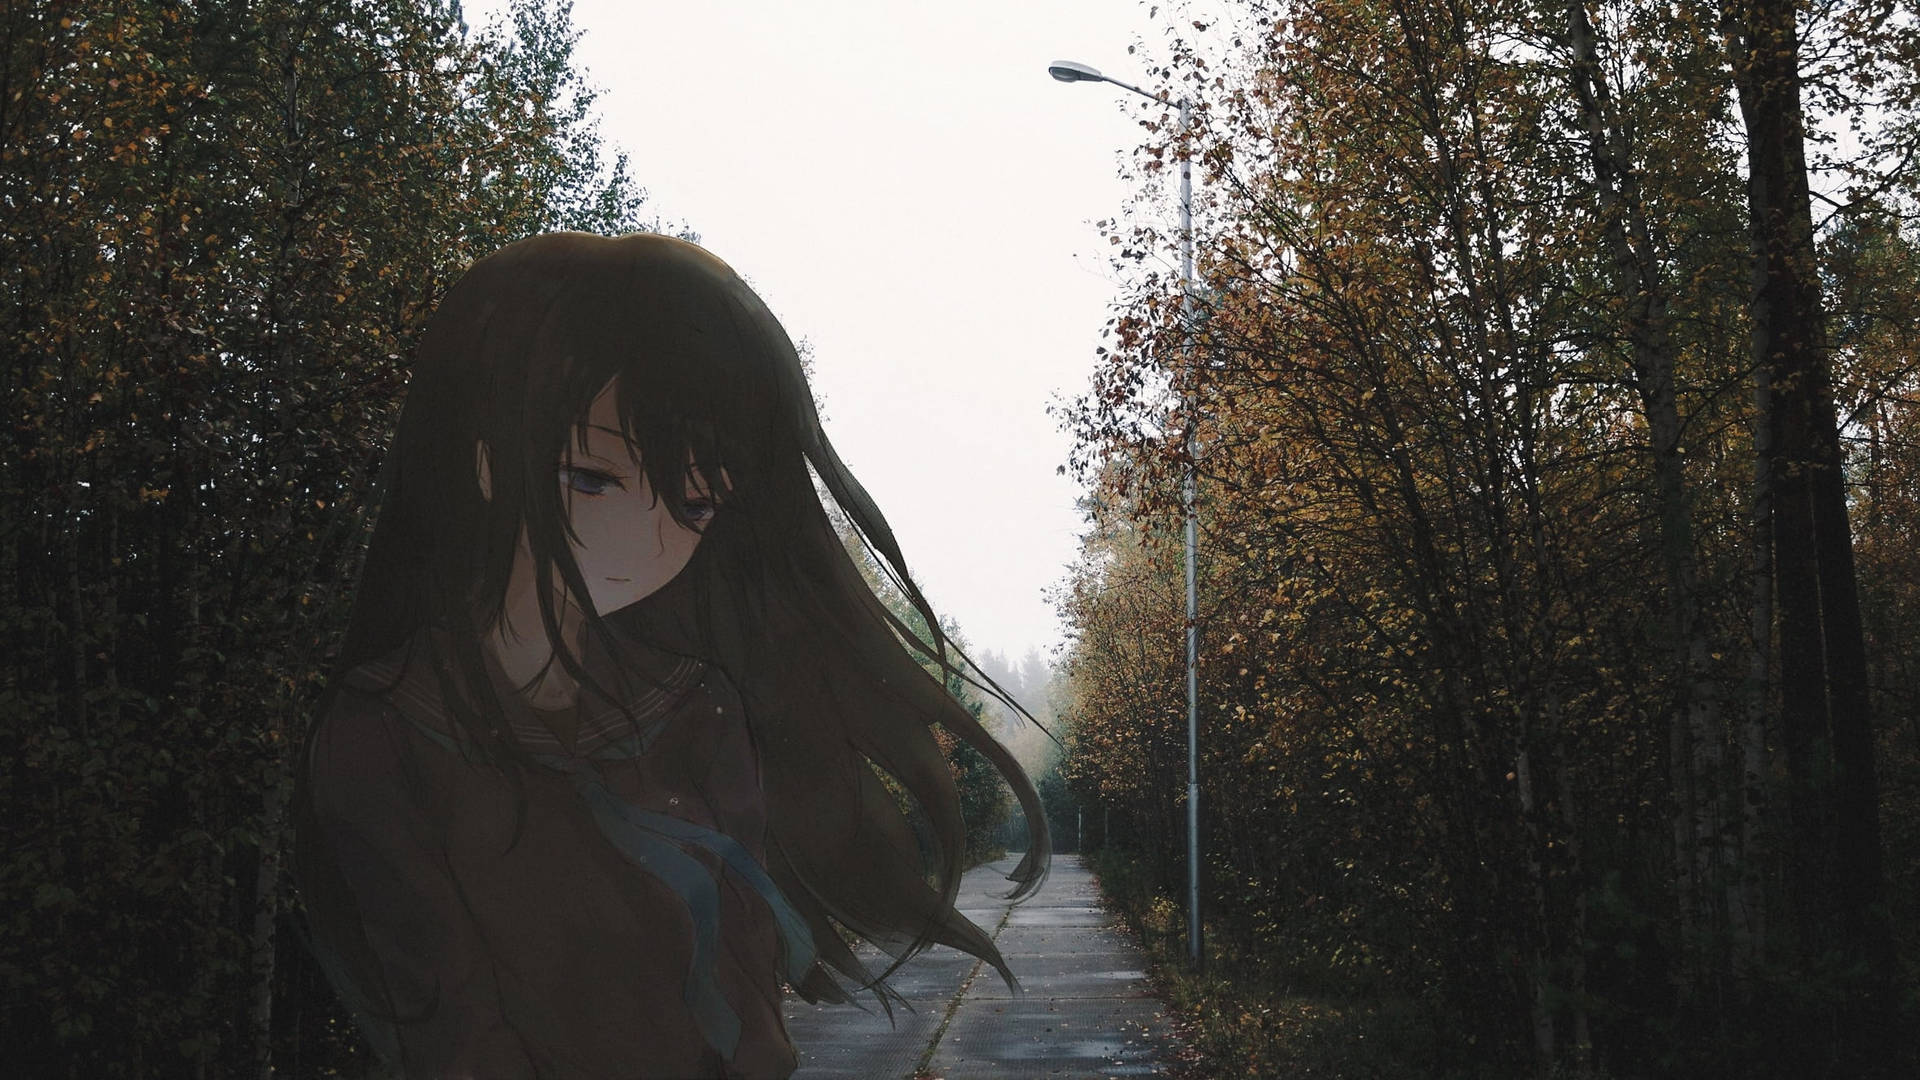 Sad Aesthetic Anime Girl In Forest Wallpaper